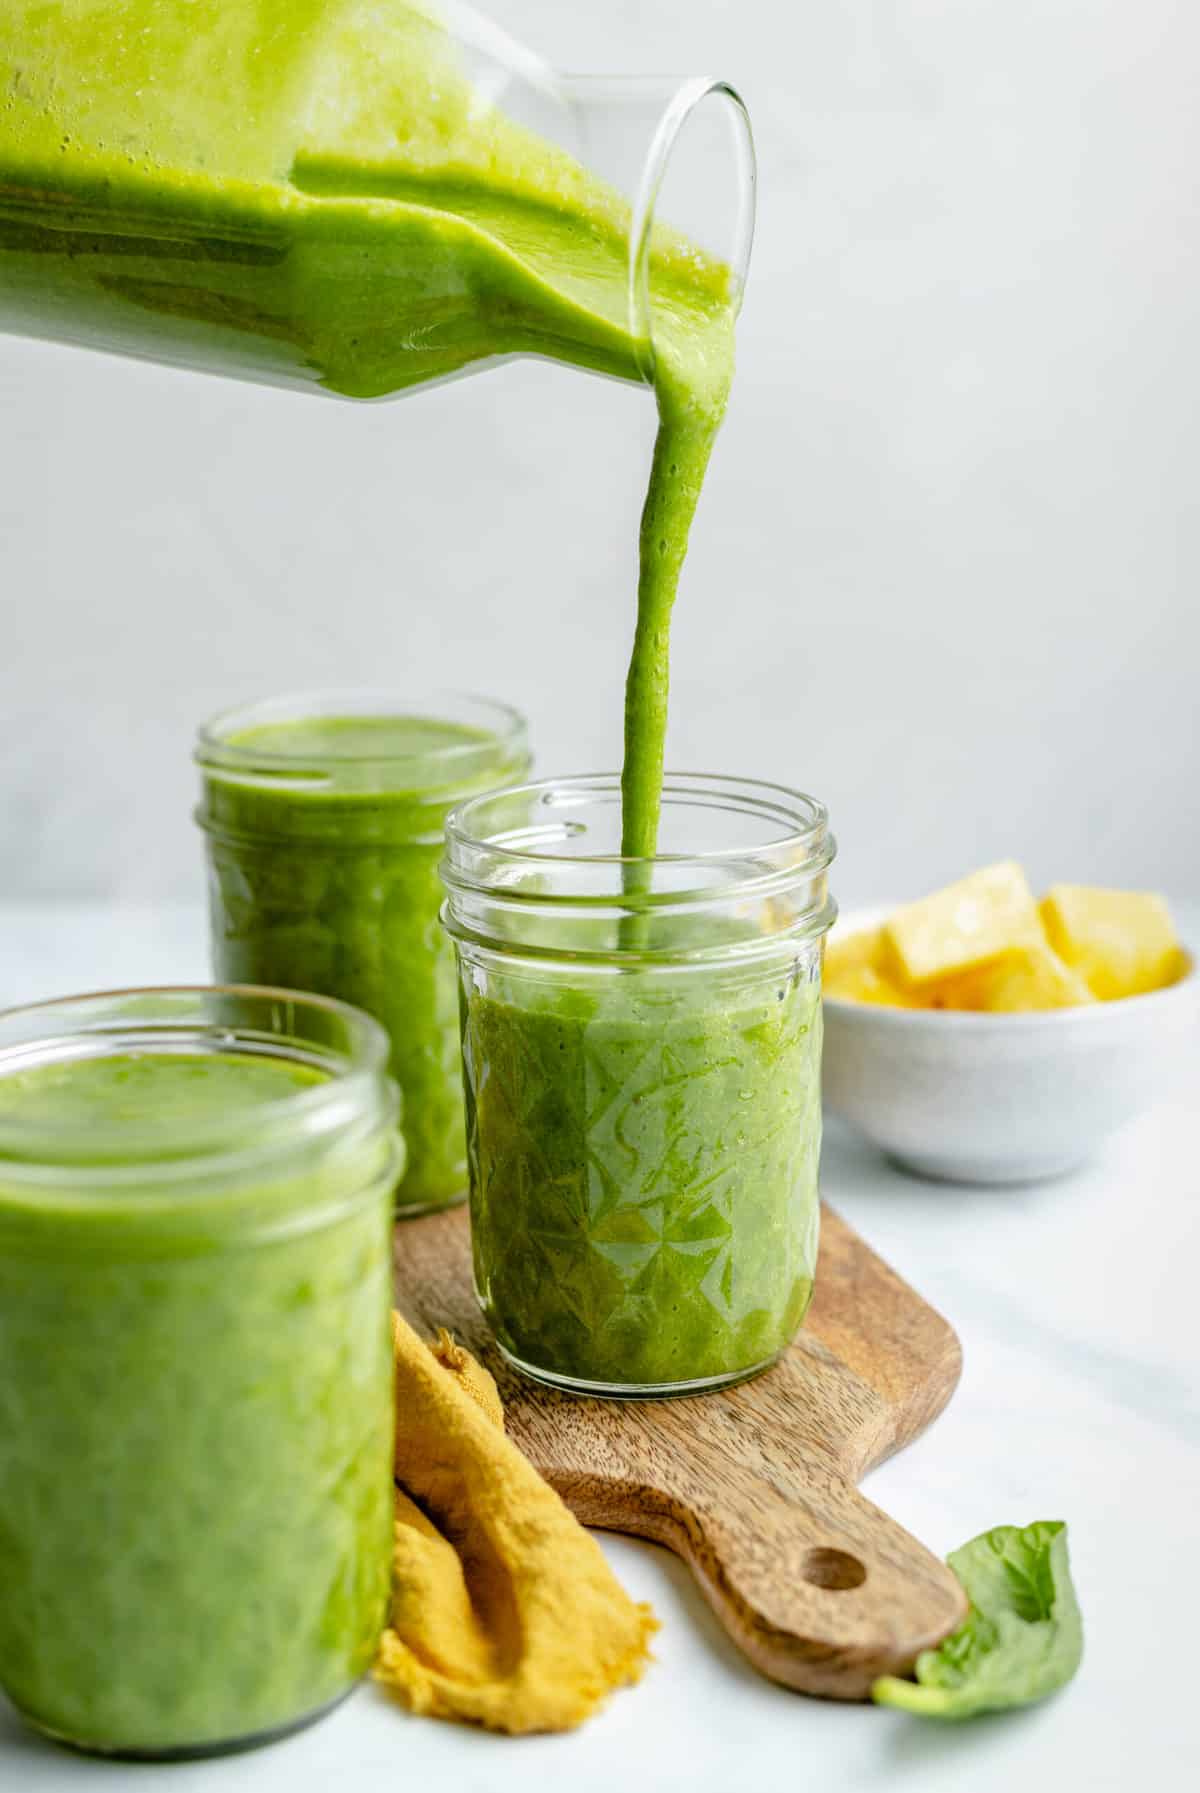 Best Green Smoothie (4 Ingredients) - Jessica in the Kitchen